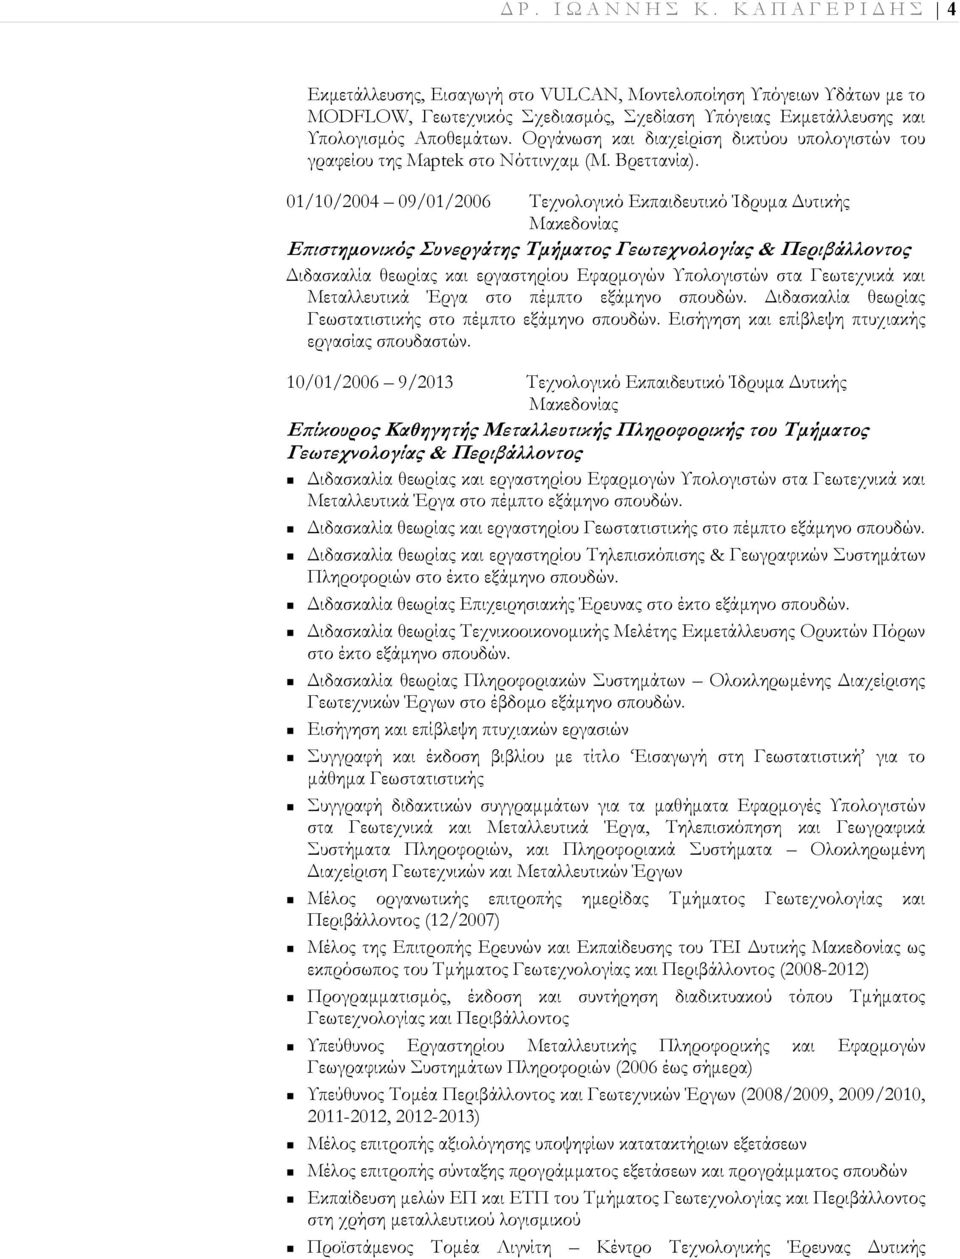 01/10/2004 09/01/2006 Τεχνολογικό Εκπαιδευτικό Ίδρυµα υτικής Μακεδονίας Ε ιστηµονικός Συνεργάτης Τµήµατος Γεωτεχνολογίας & Περιβάλλοντος ιδασκαλία θεωρίας και εργαστηρίου Εφαρµογών Υπολογιστών στα